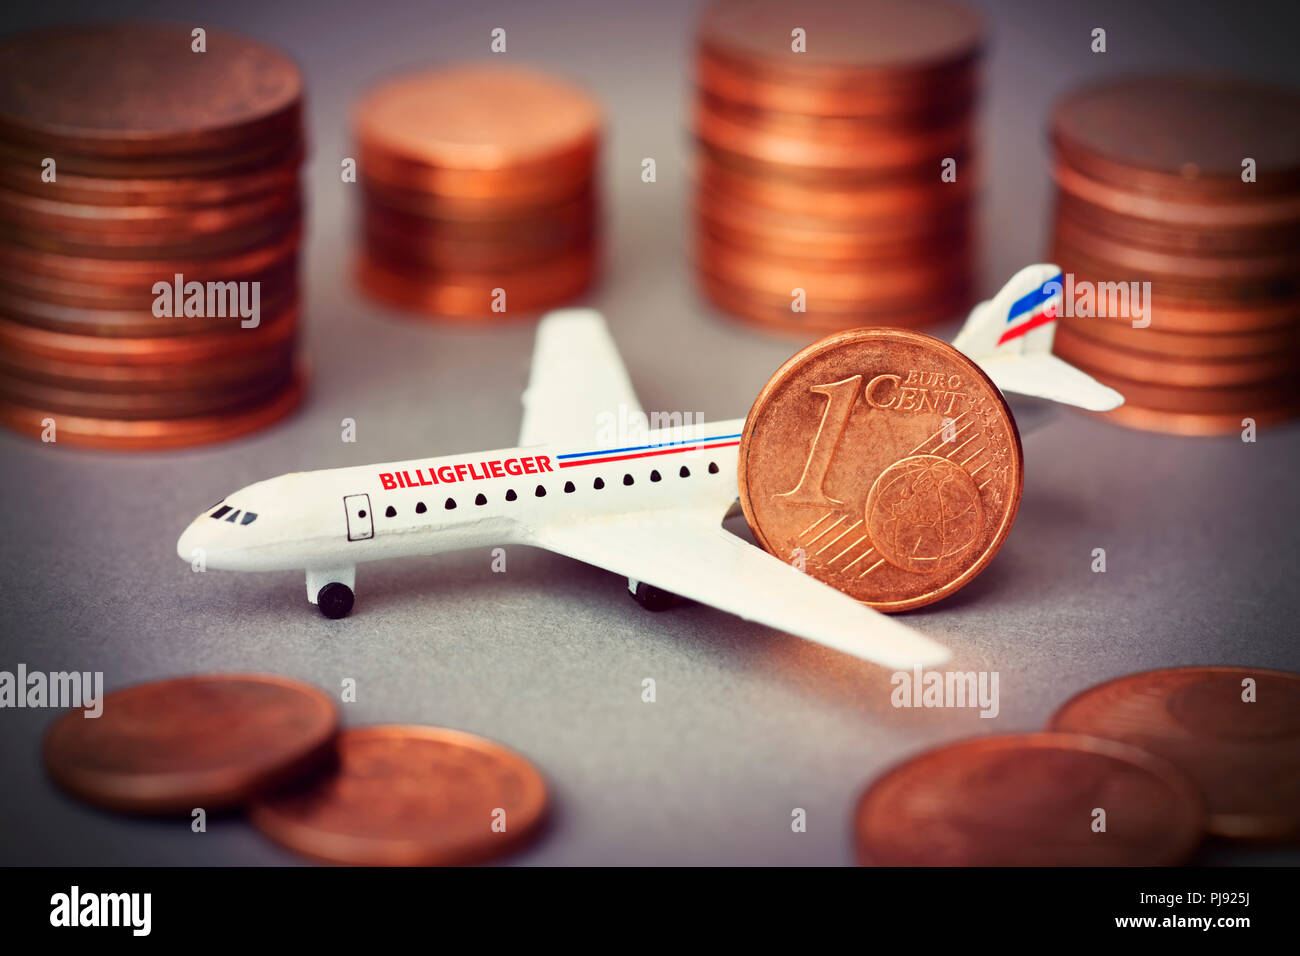 Miniature airplane with label Cheap airman and cent coins, Miniaturflugzeug mit Aufschrift Billigflieger und Centmünzen Stock Photo